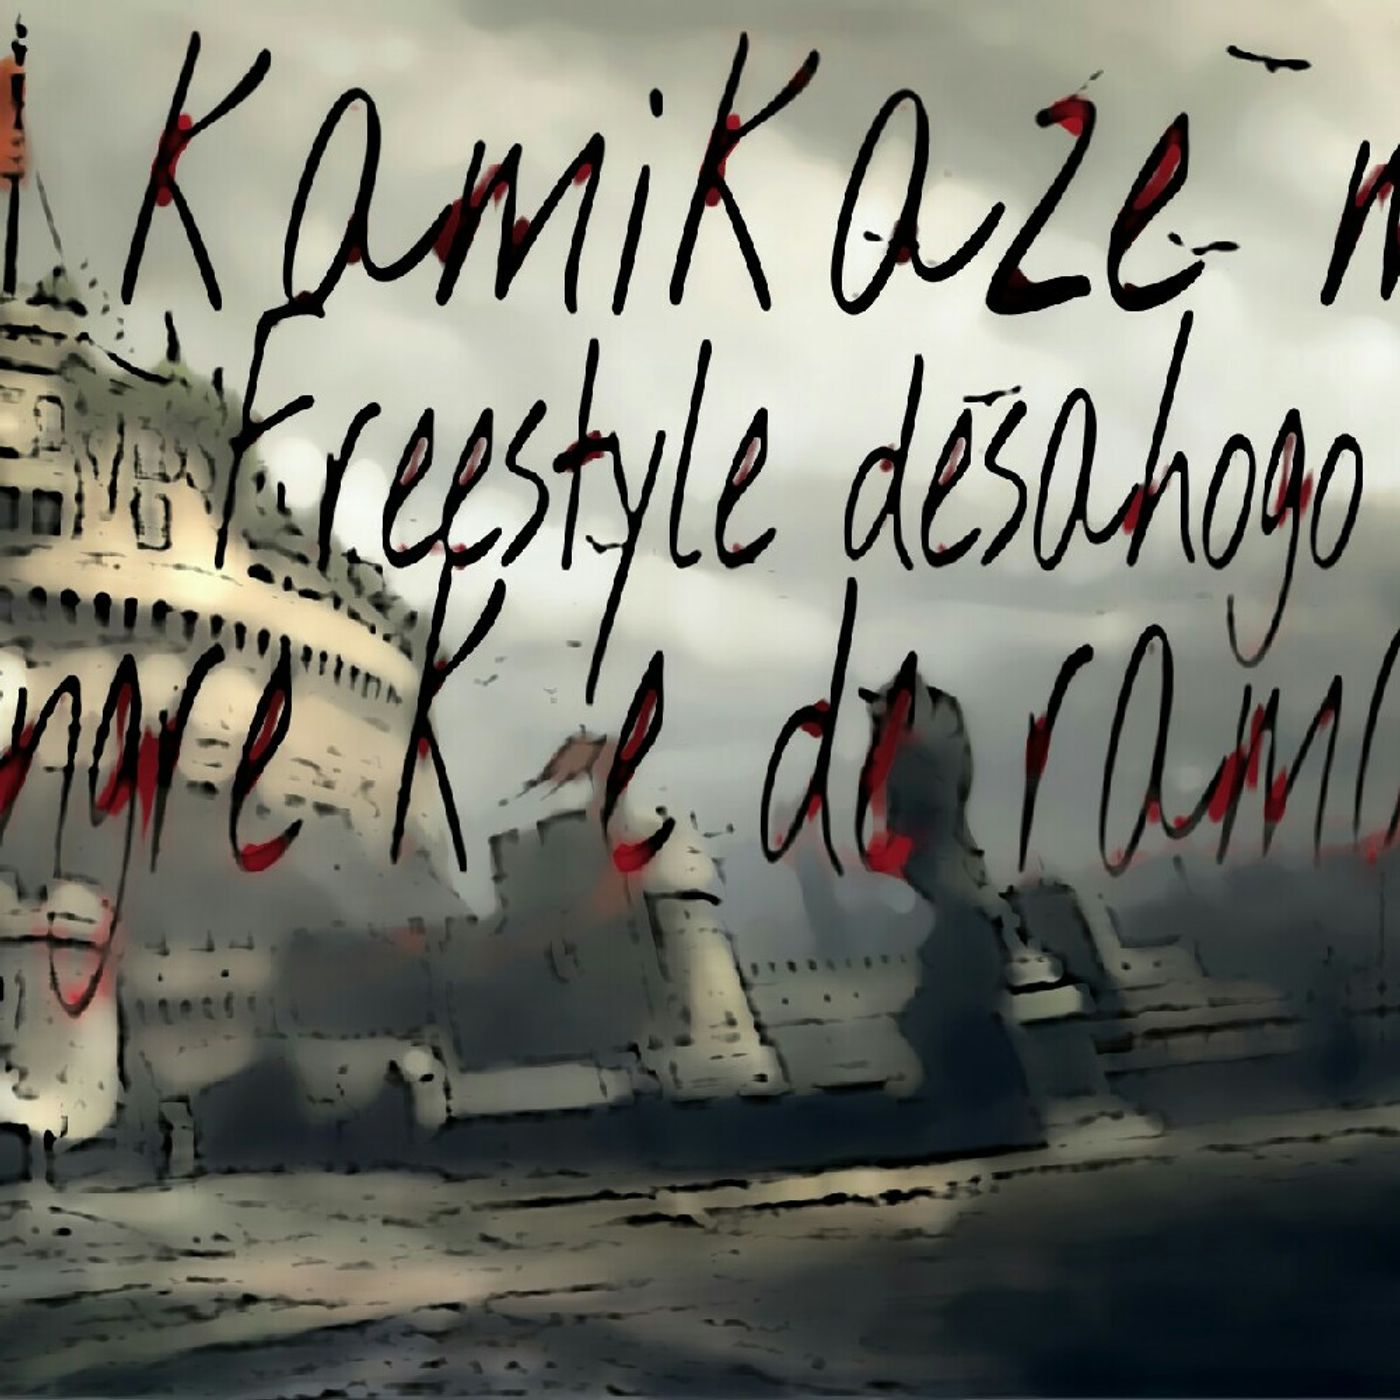 Kamikaze m.c's tracks